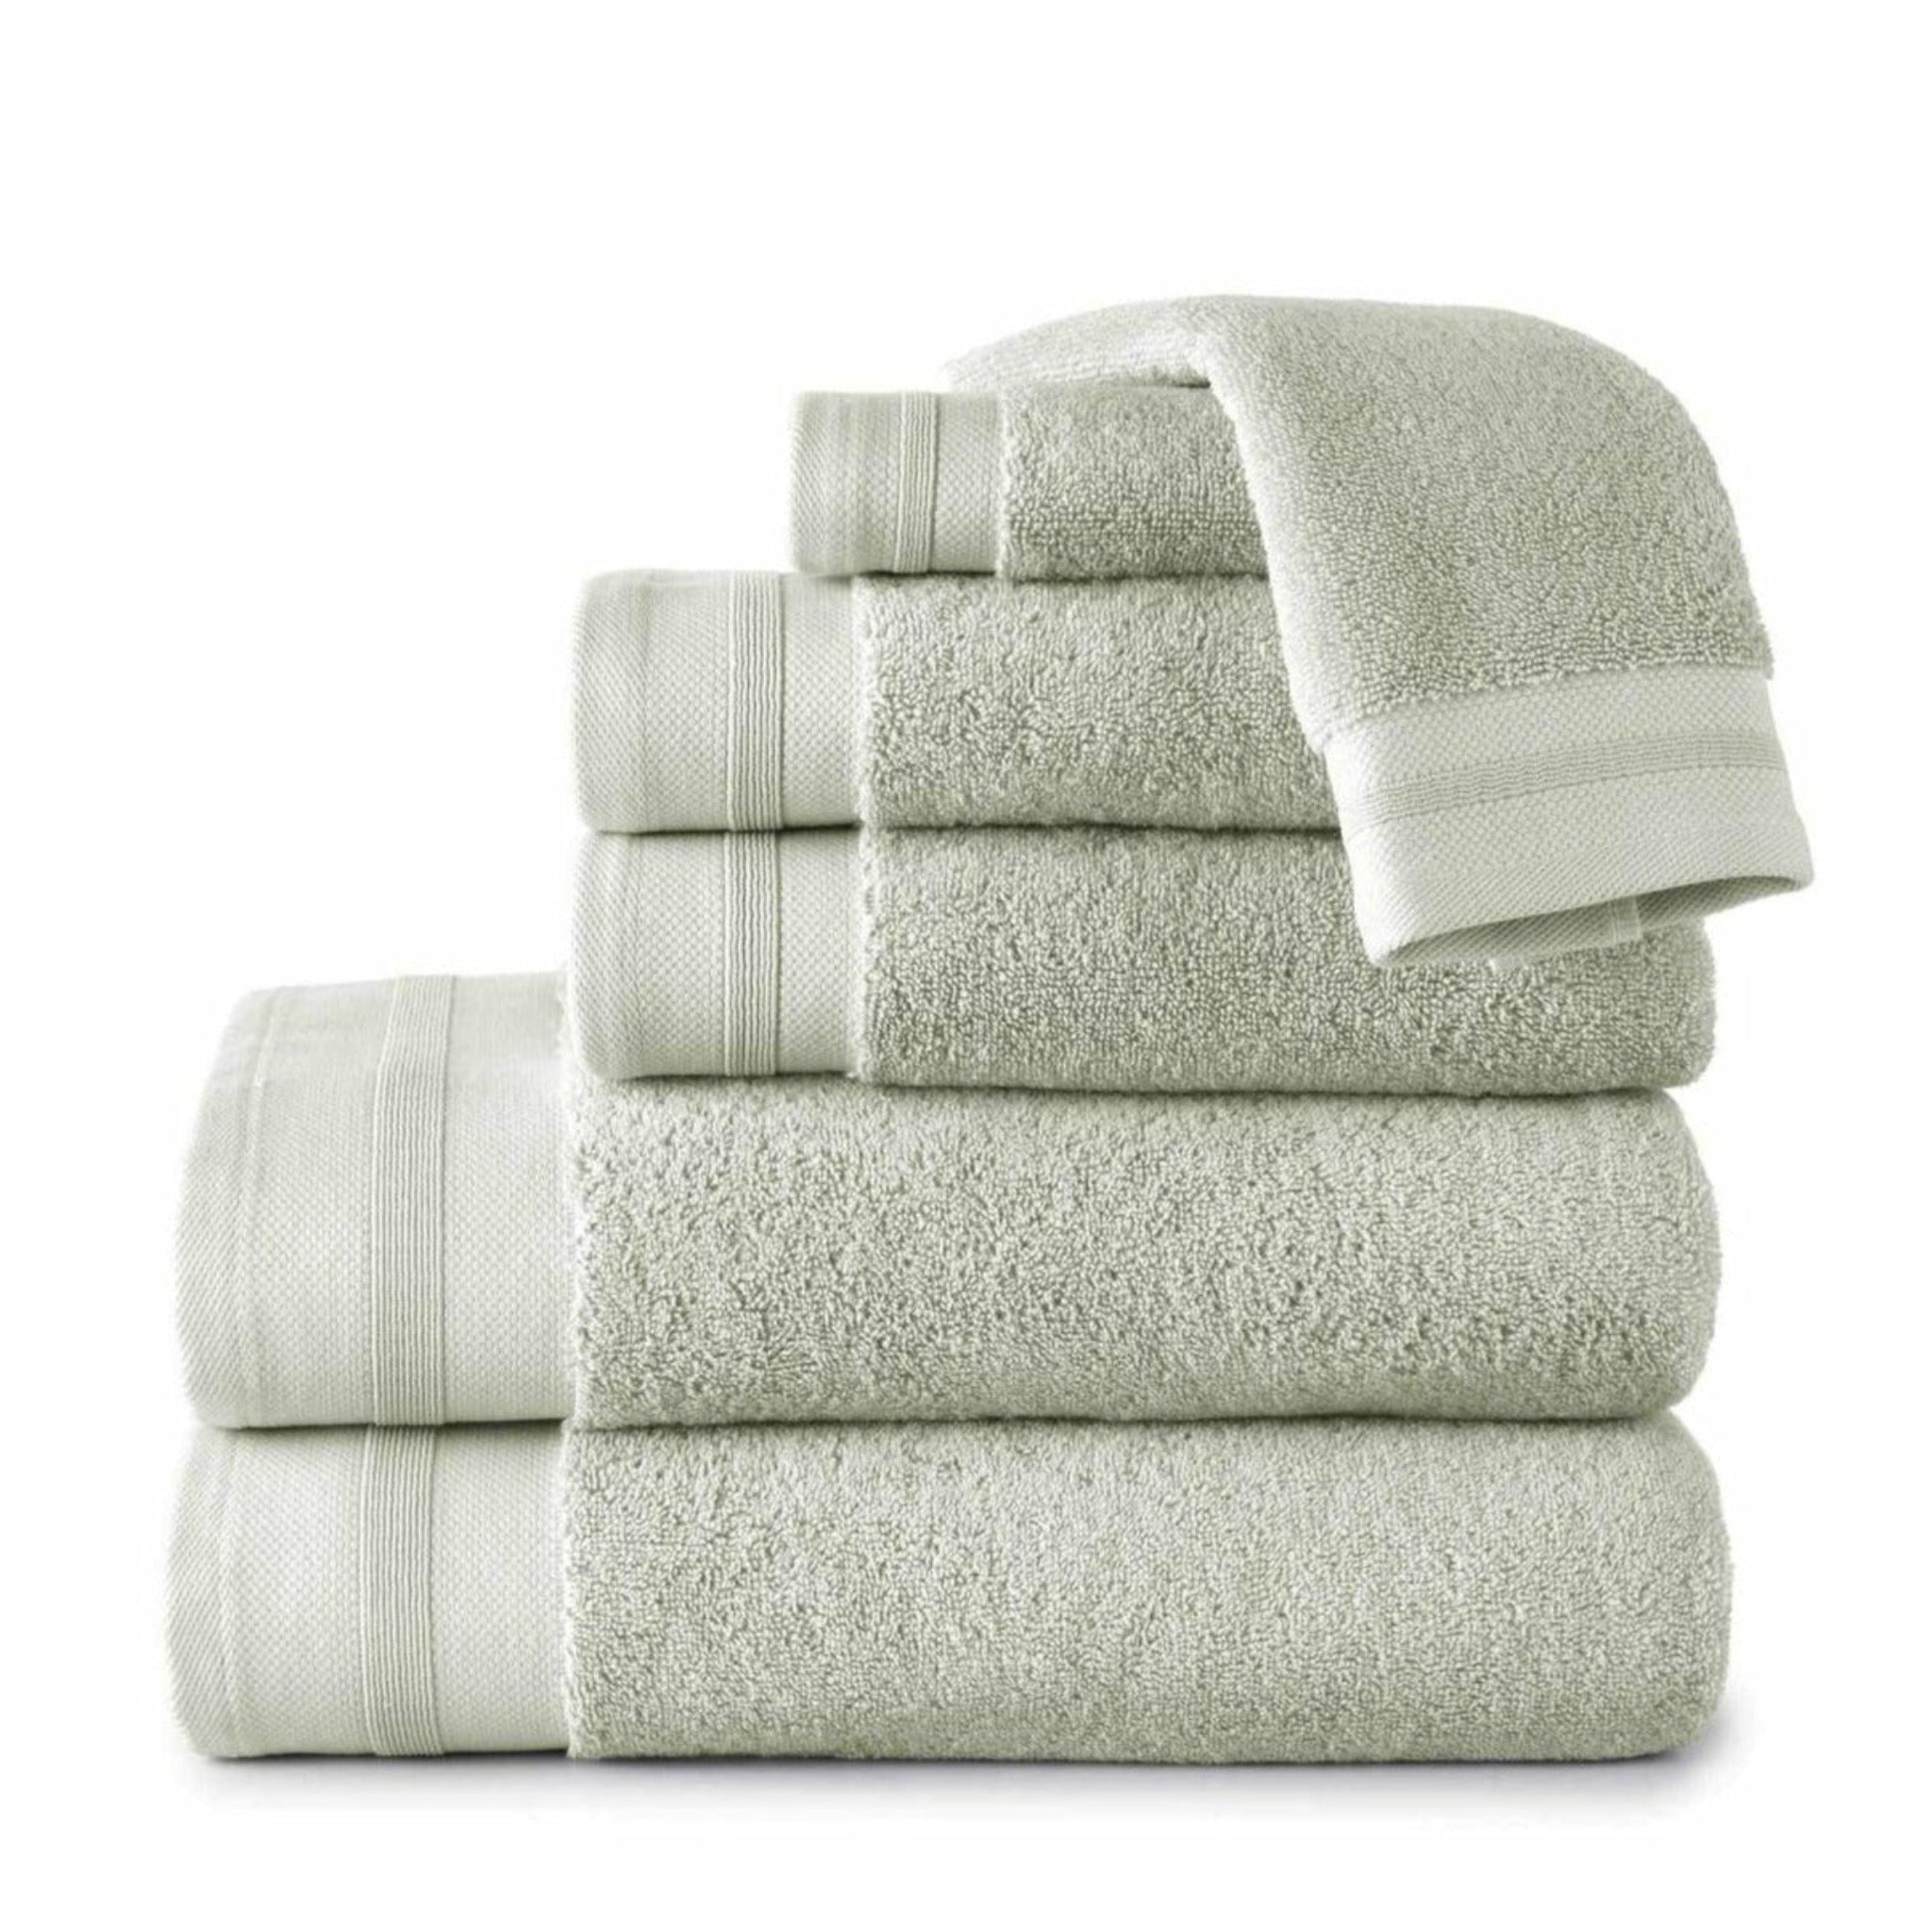 https://flandb.com/cdn/shop/products/Coronado_Towels_Sage.jpg?v=1667469857